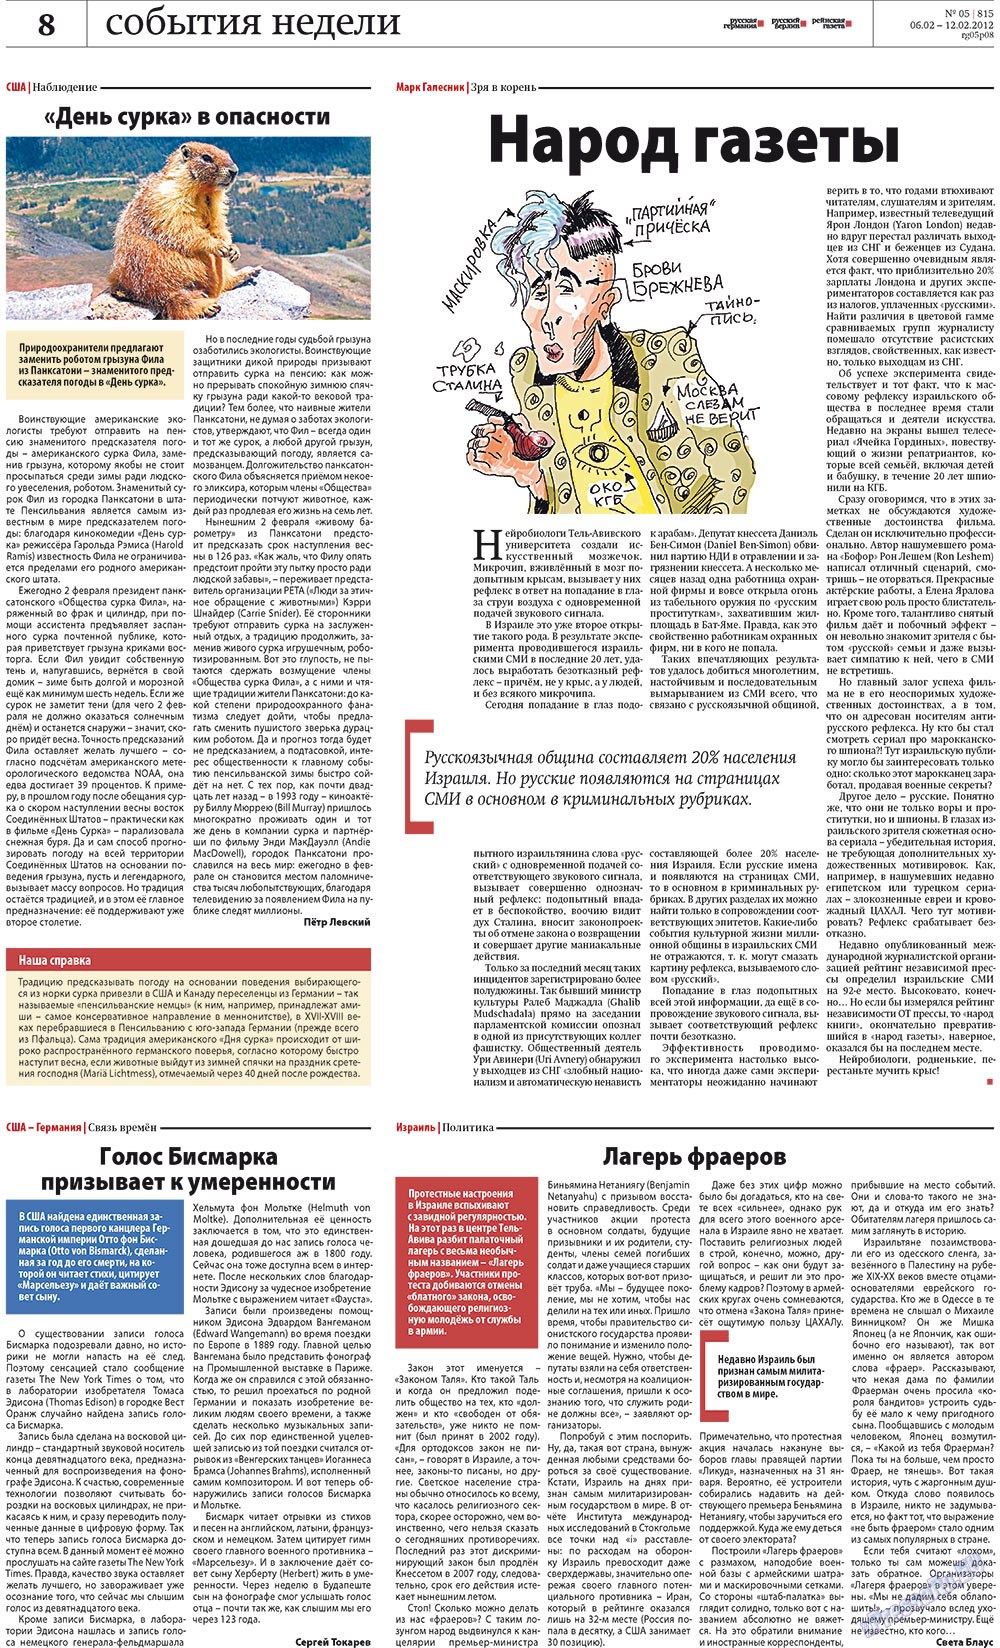 Рейнская газета (газета). 2012 год, номер 5, стр. 8